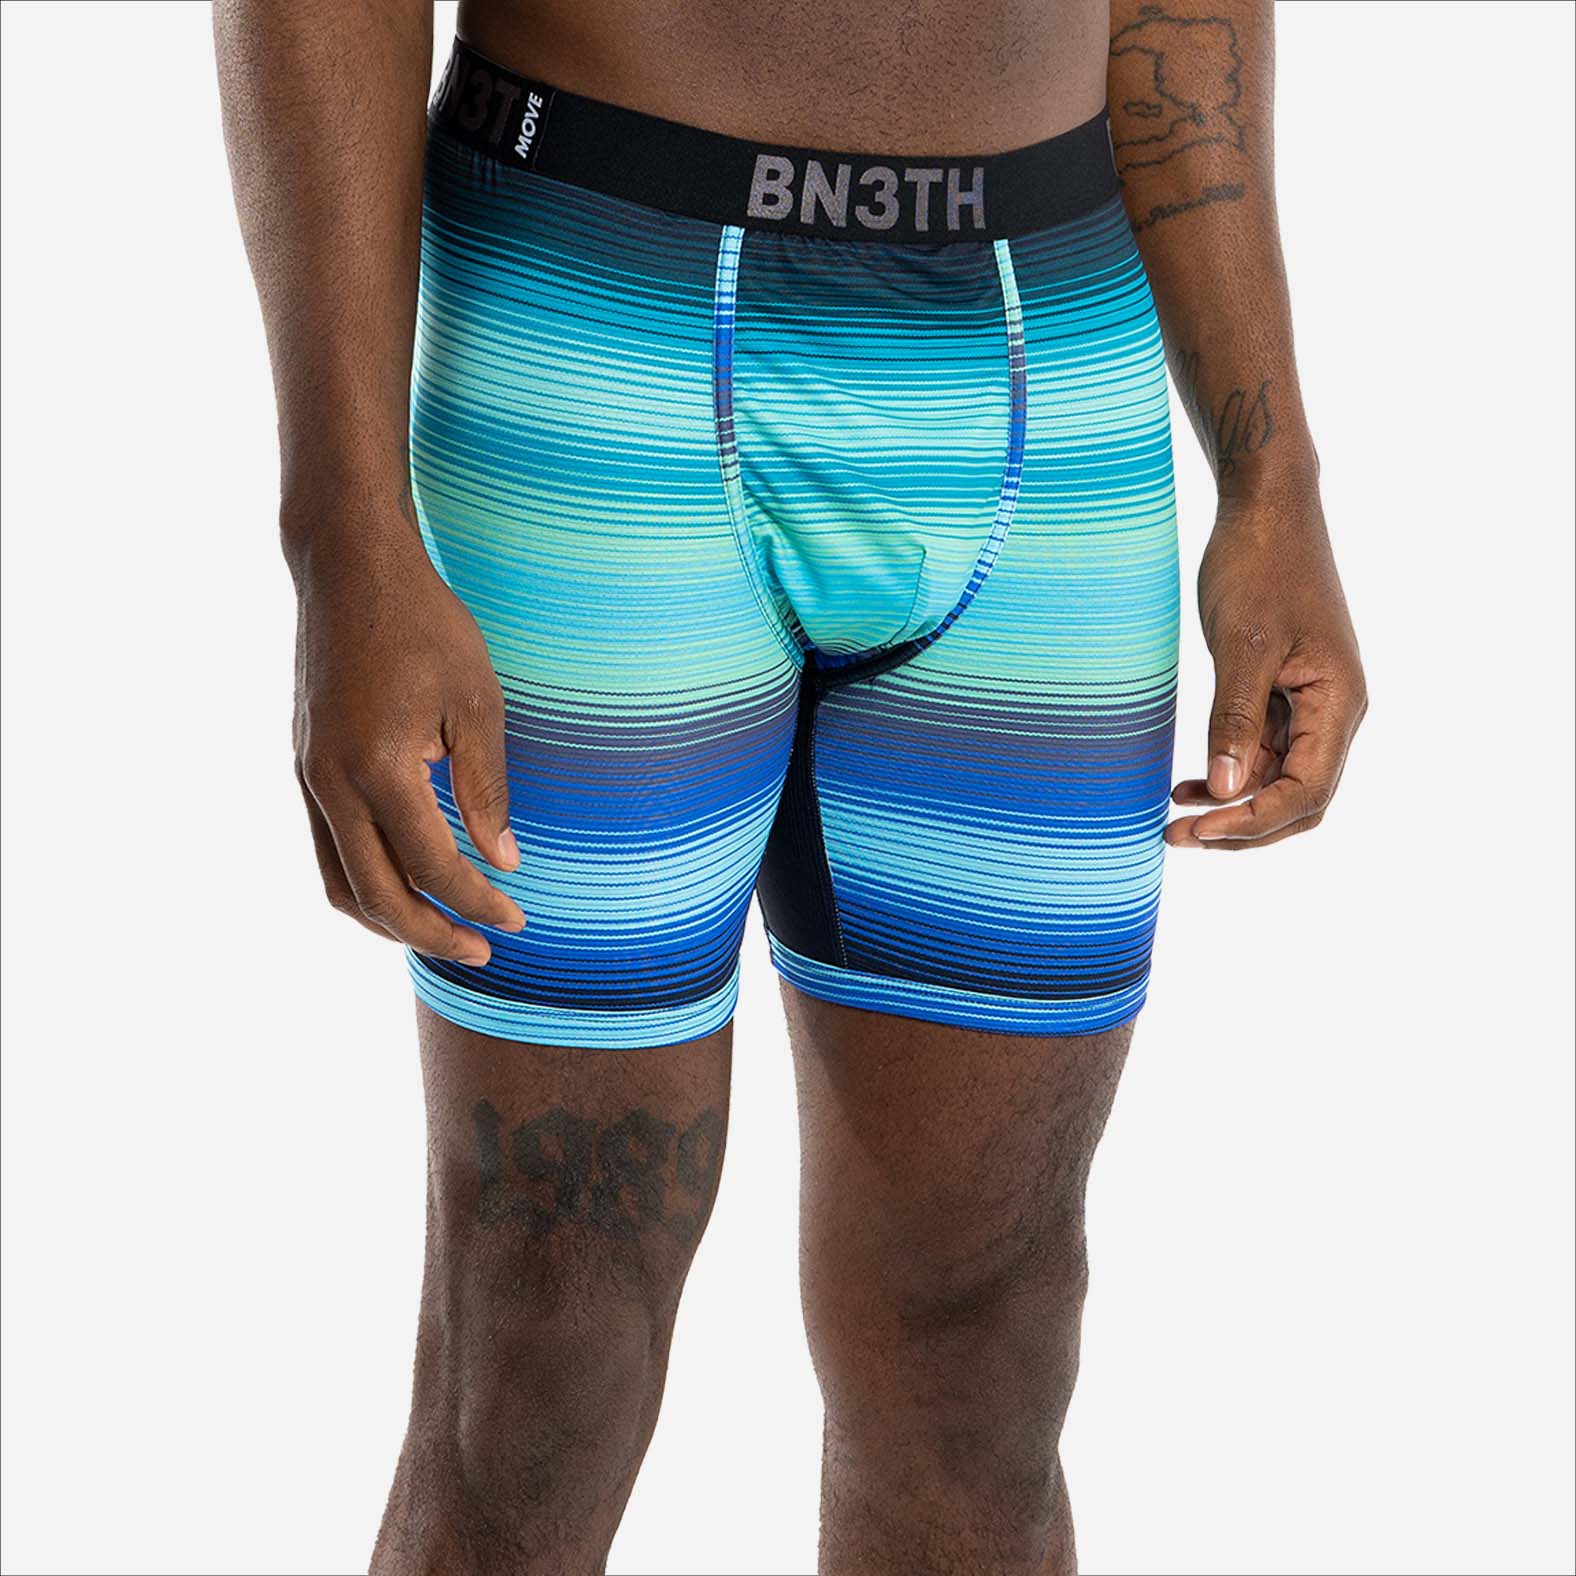 Bn3th Boxers Size Chart  Men's Premium Underwear– 88 Gear